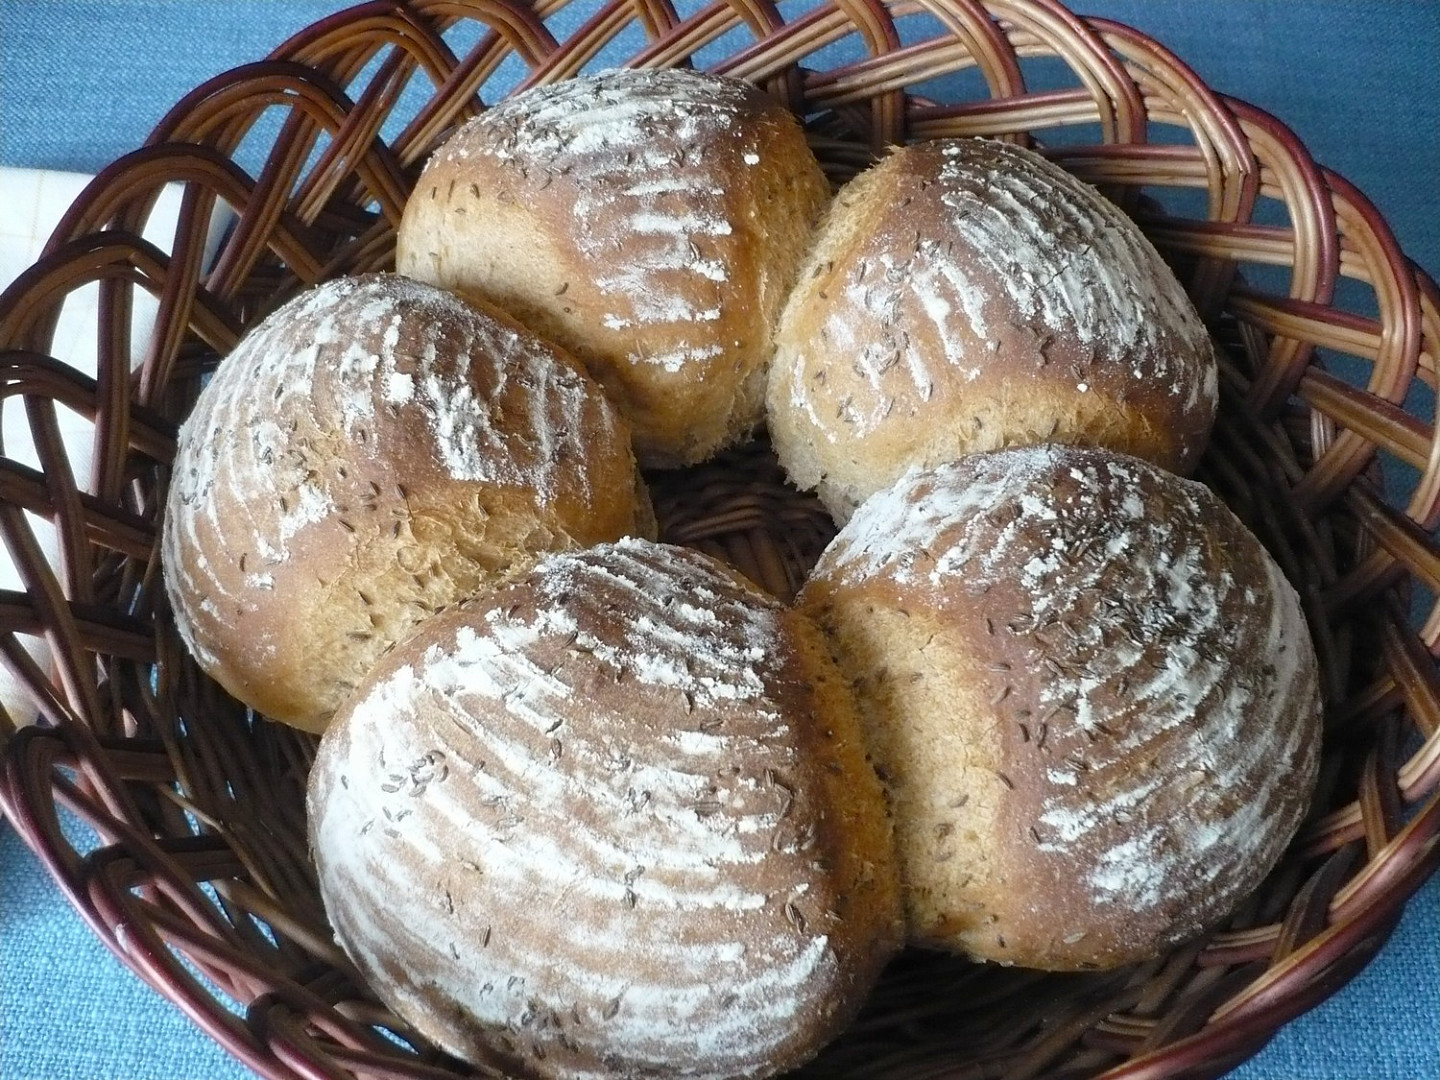 Pšenično-žitný chléb s jogurtem ve tvaru věnce